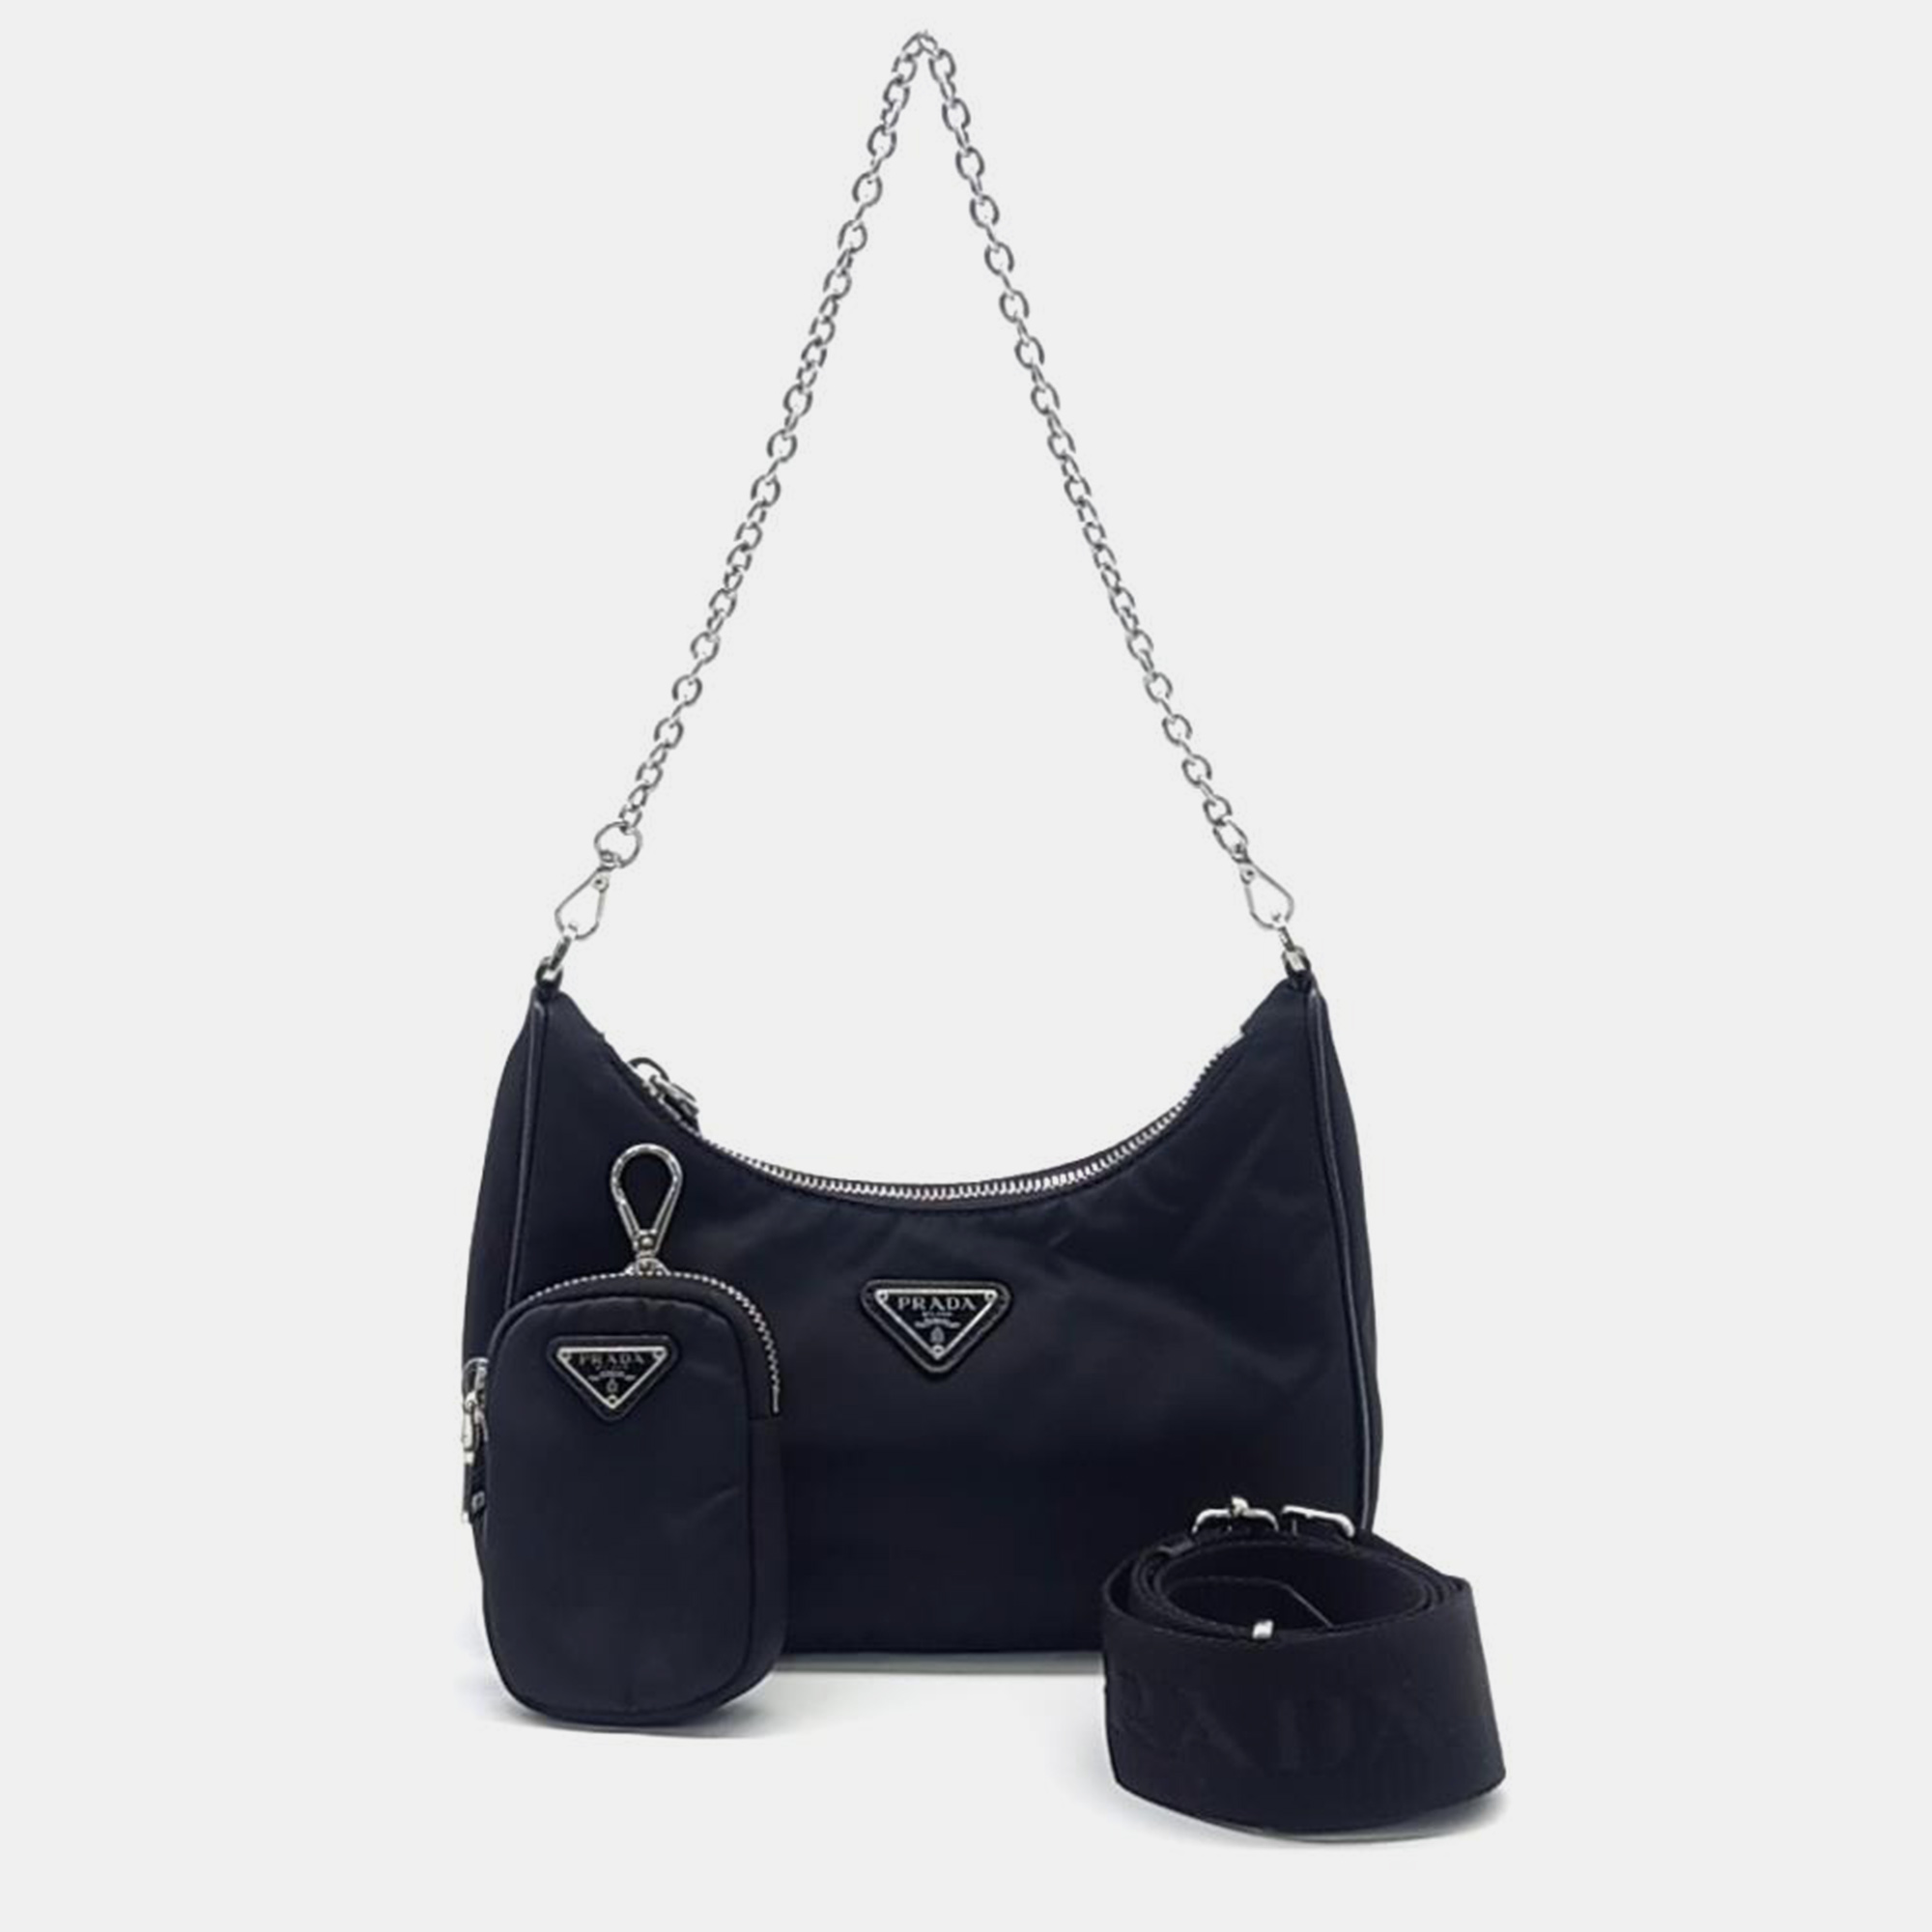 

Prada Nylon Tessuto Chain Strap Hobo Bag, Black